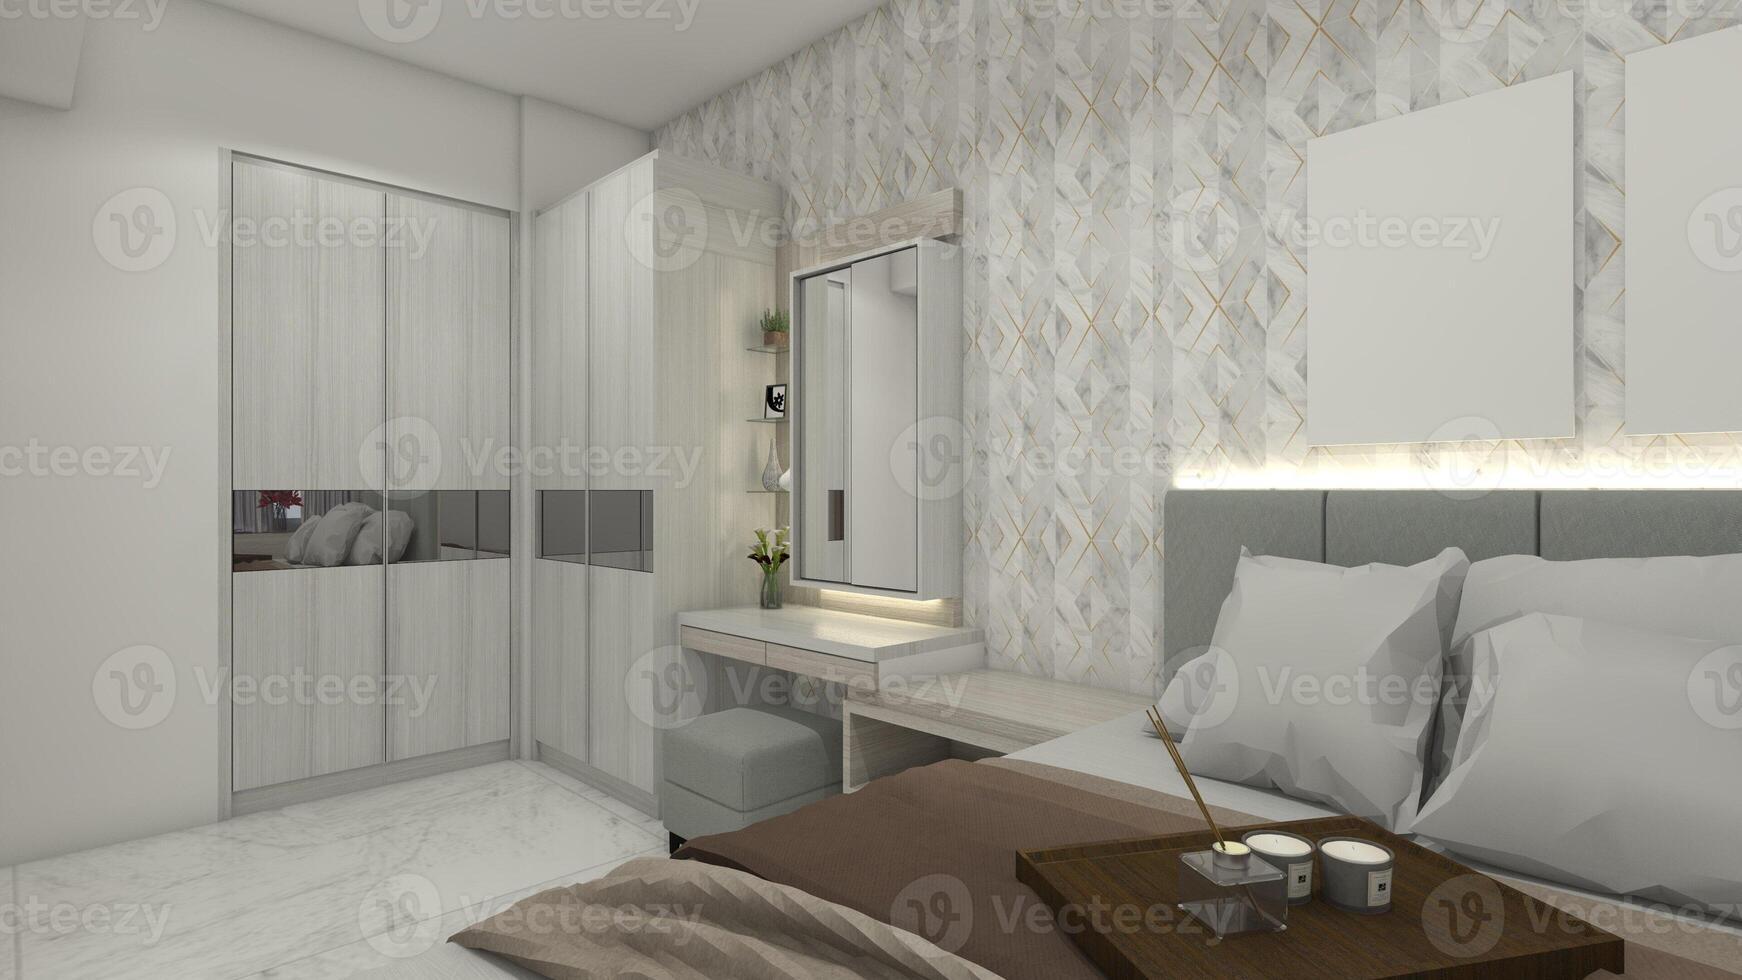 minimalista y moderno dormitorio diseño con ropa guardarropa y vendaje mesa, 3d ilustración foto